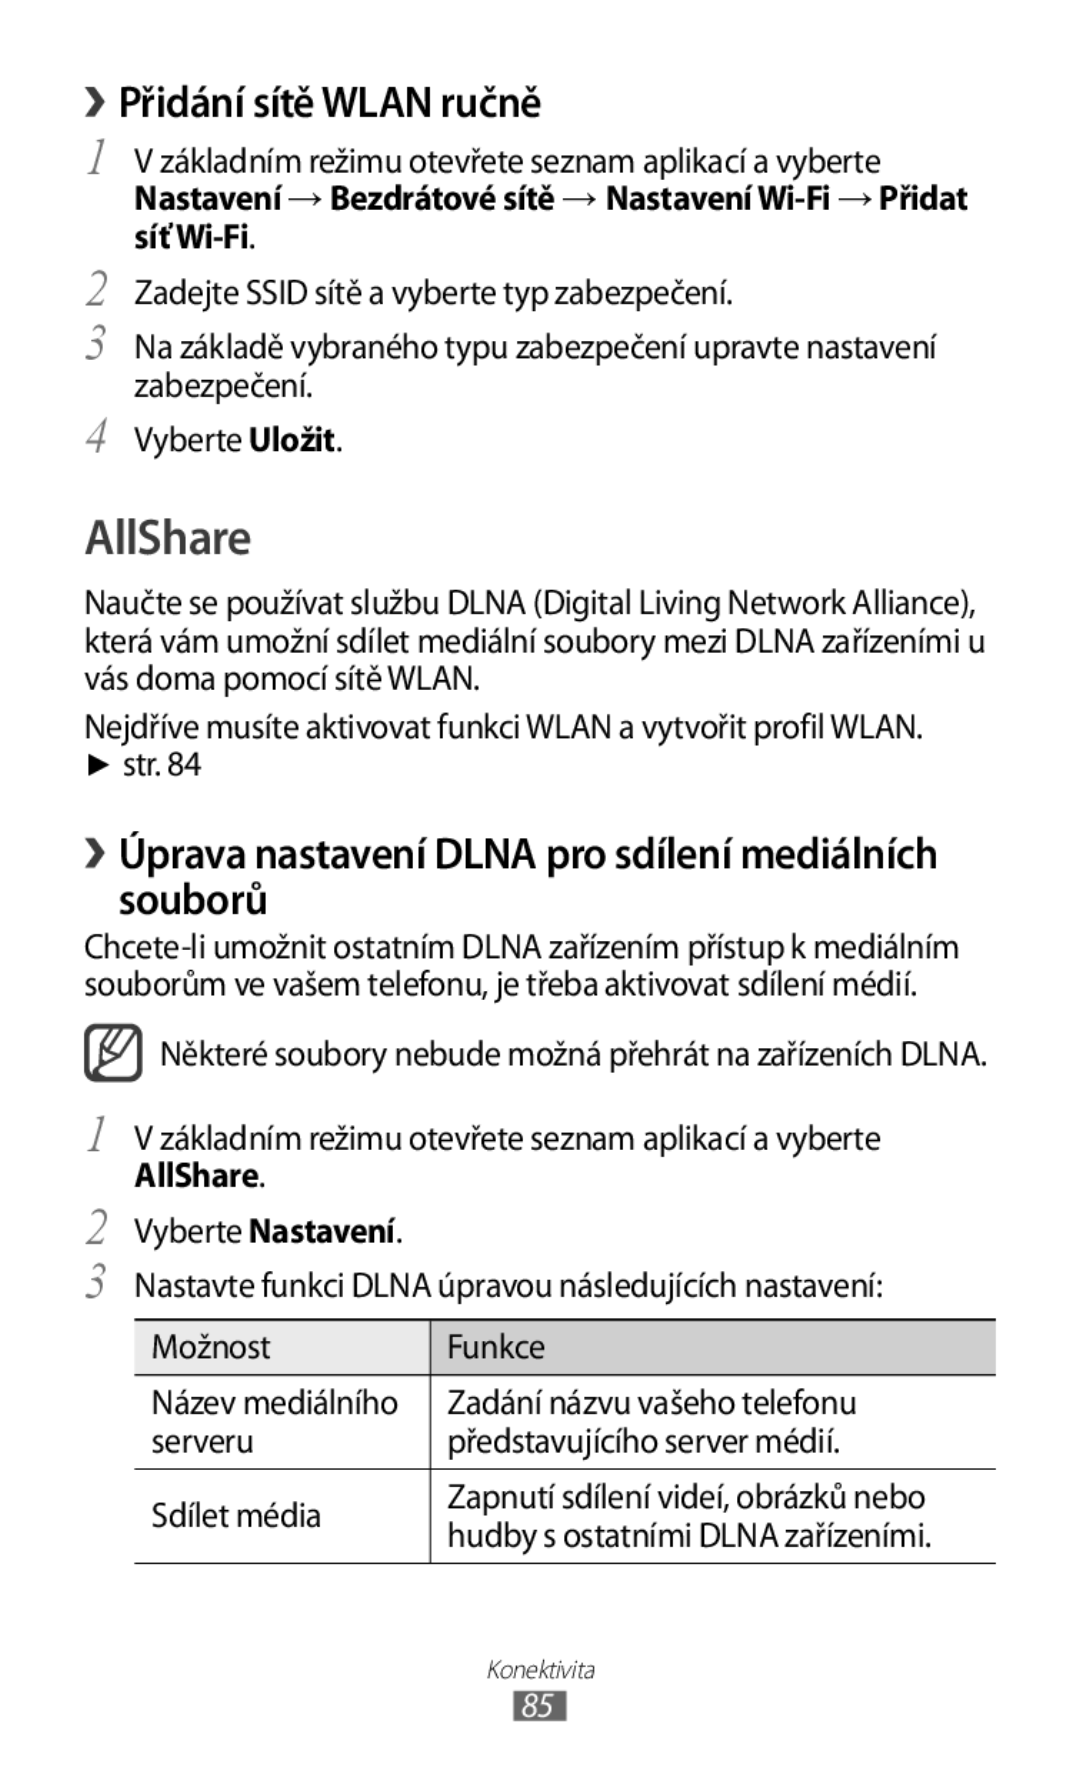 Samsung GT2S5830OKATMZ manual AllShare, › Přidání sítě Wlan ručně, Souborů, › Úprava nastavení Dlna pro sdílení mediálních 